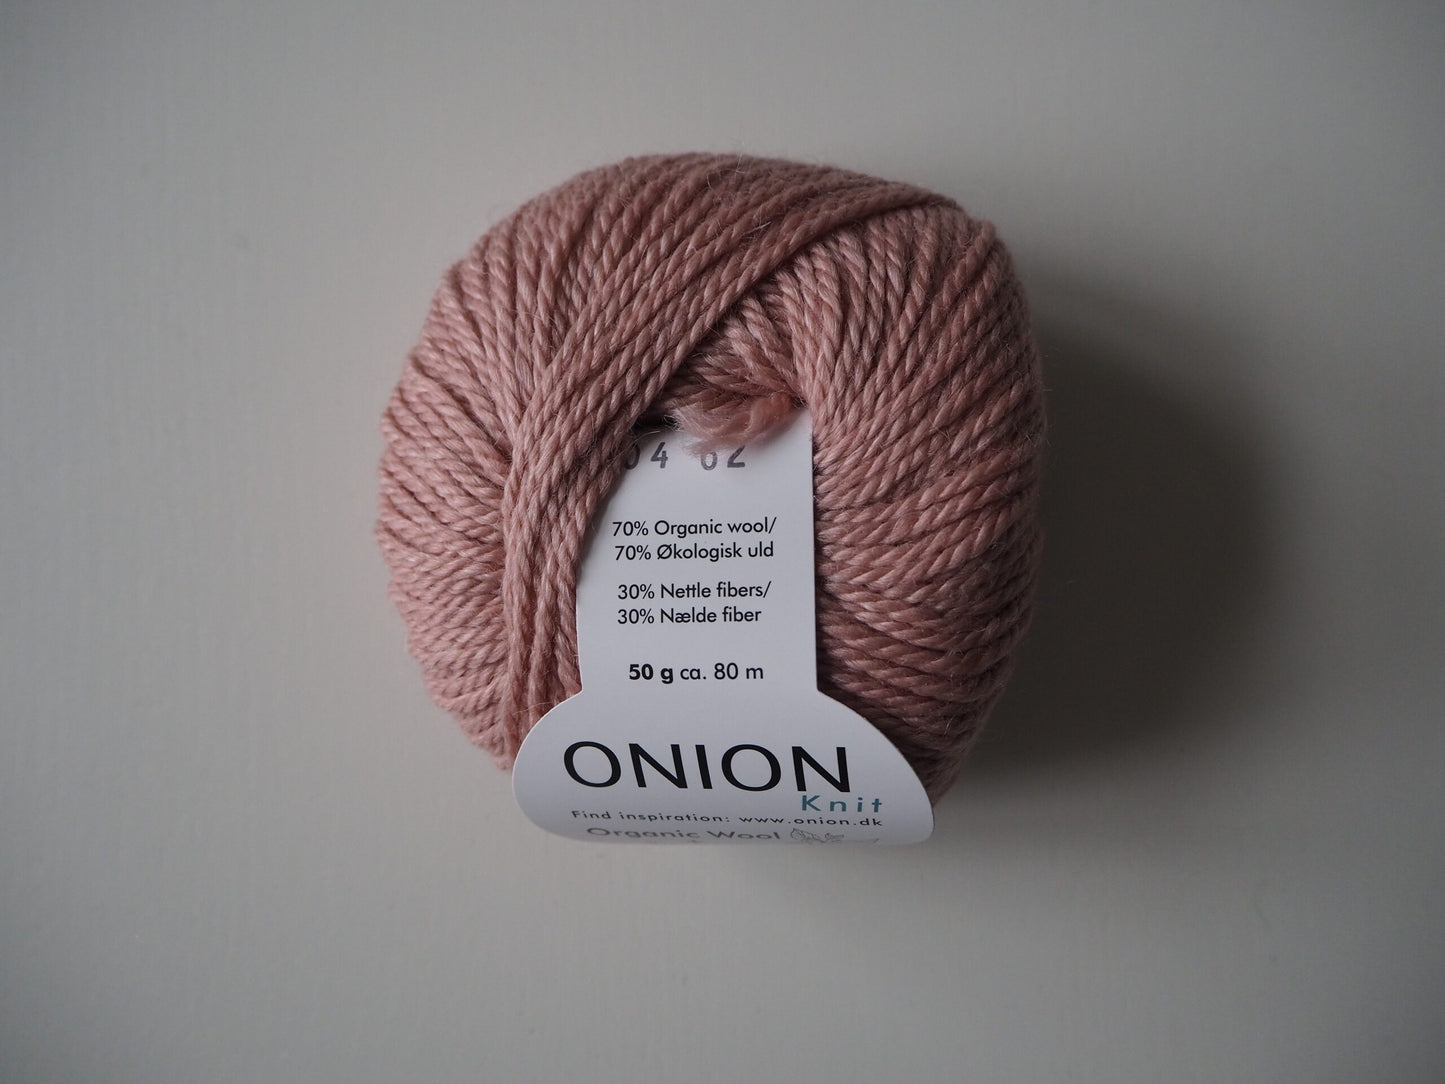 Onion No. 6 Organic Wool + Nettles 604 Laks